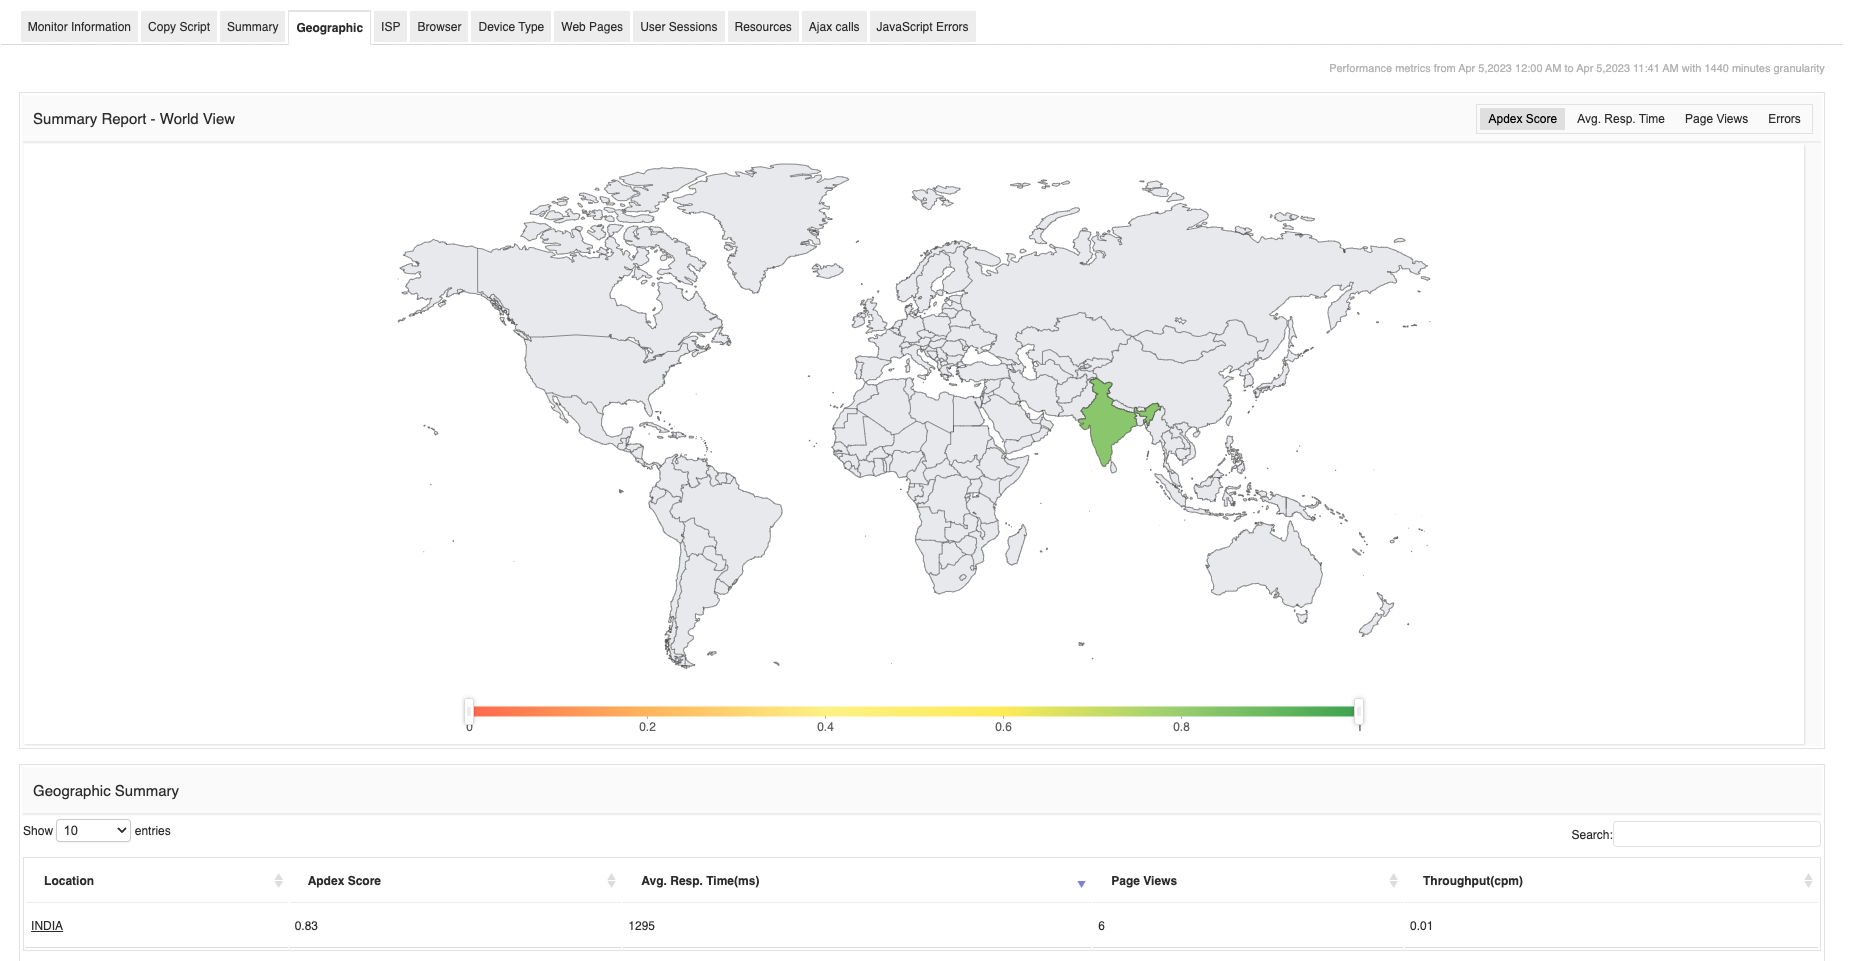 Mapa de la experiencia de usuario UX web - Applications Manager